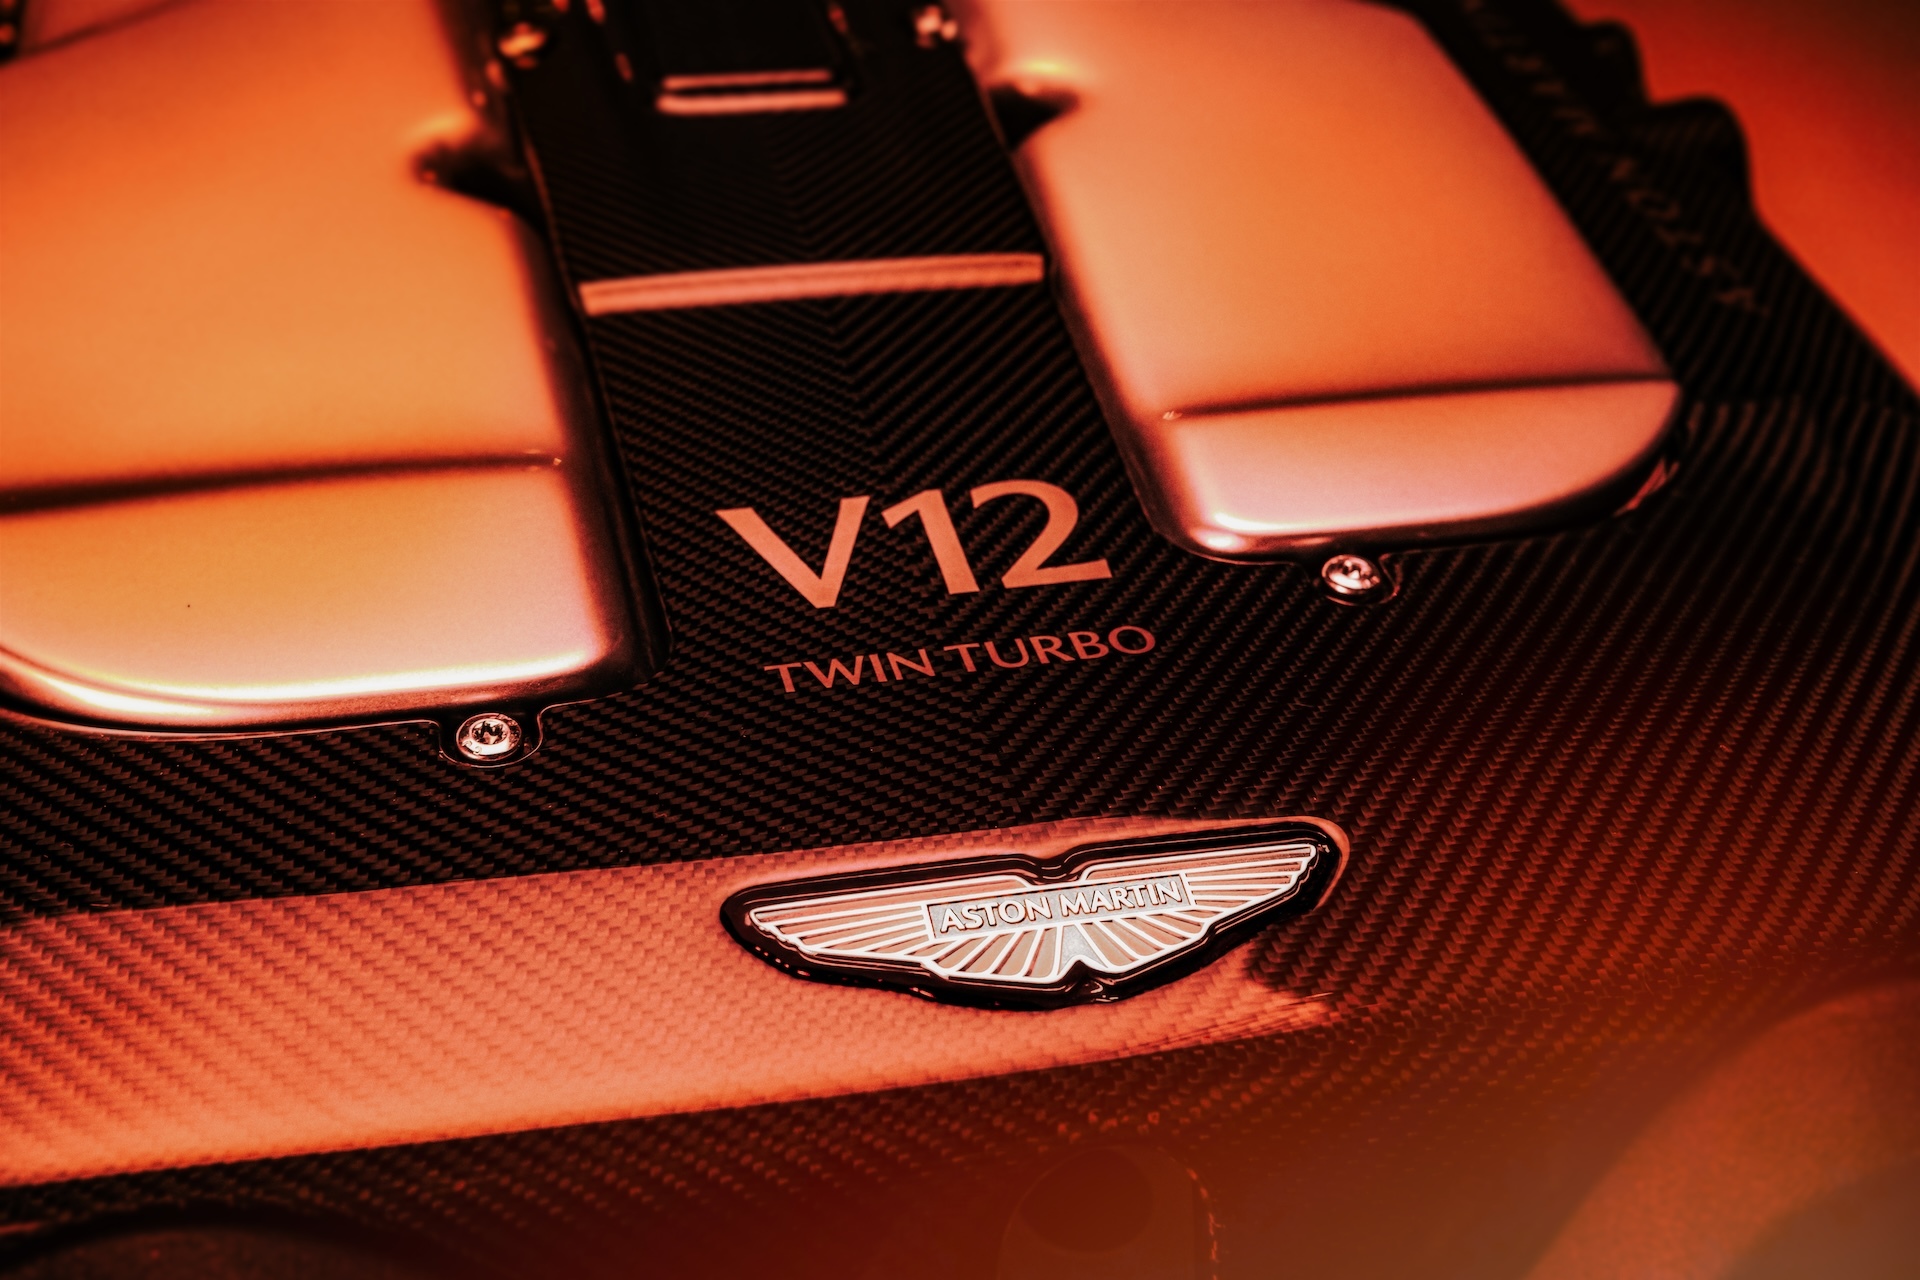 Aston Martin анонсировал появление нового мотора V12 на суперкаре Vanquish